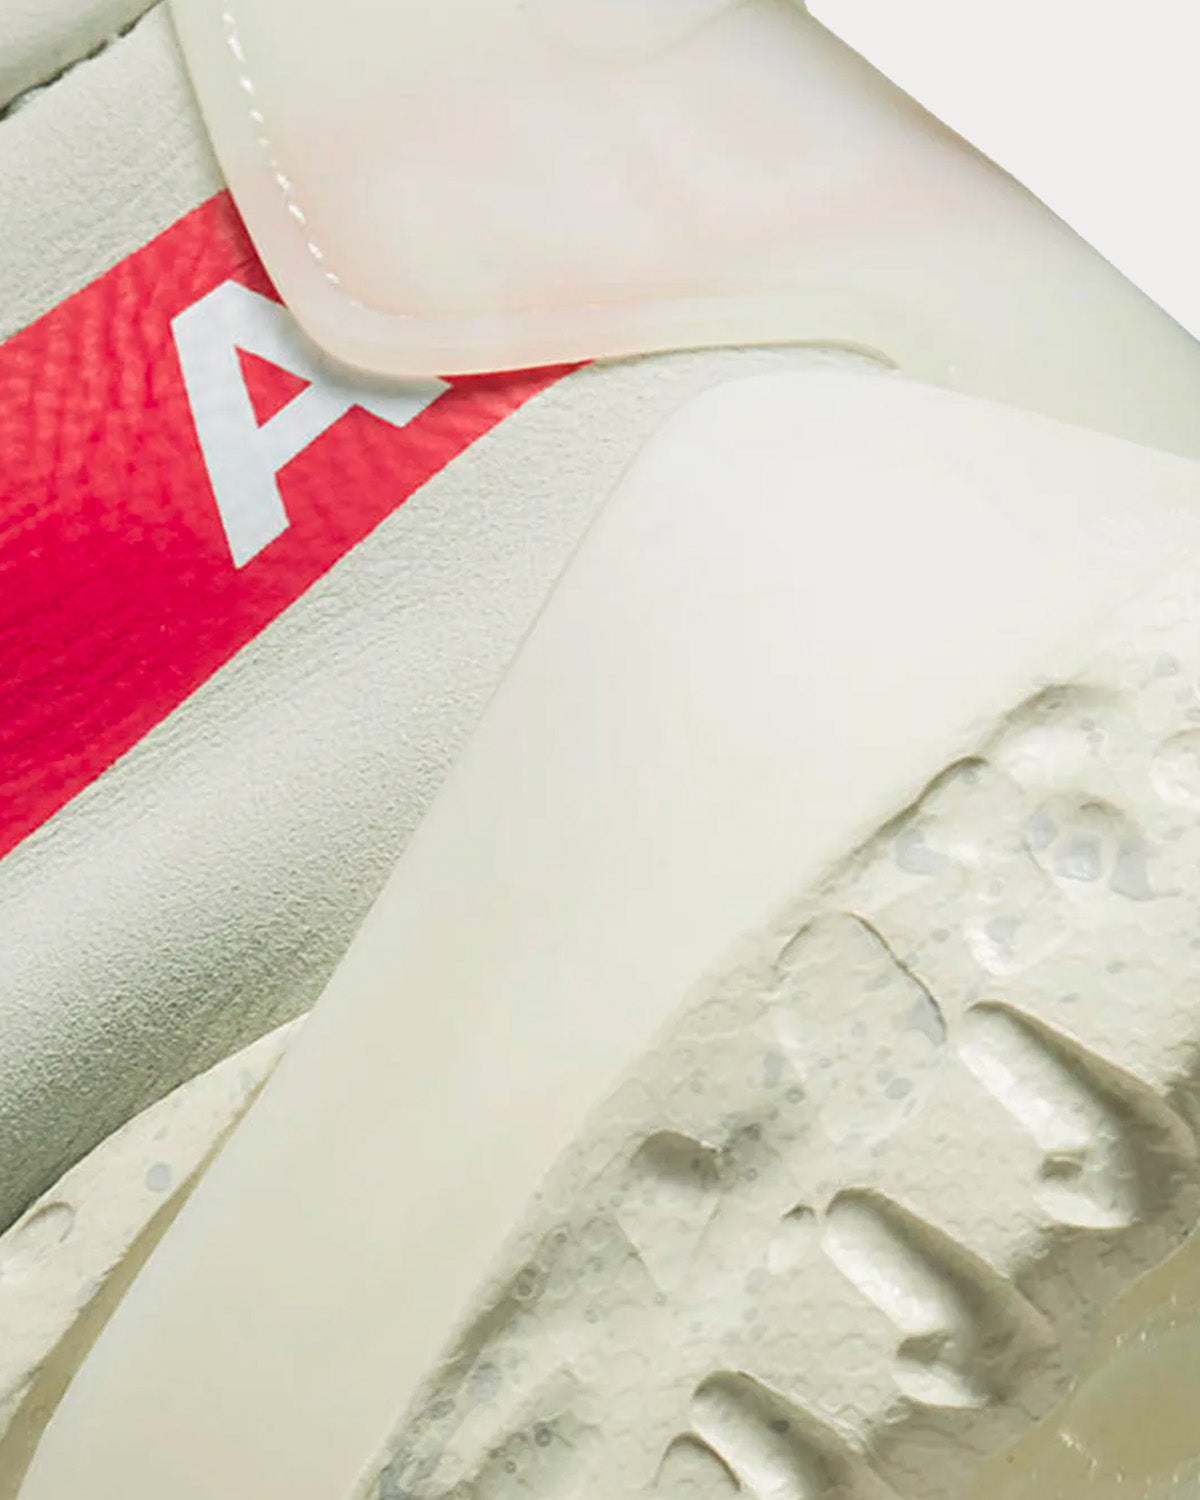 Nike x Undercover - Moc Flow Light Bone / University Red / White Slip On Sneakers